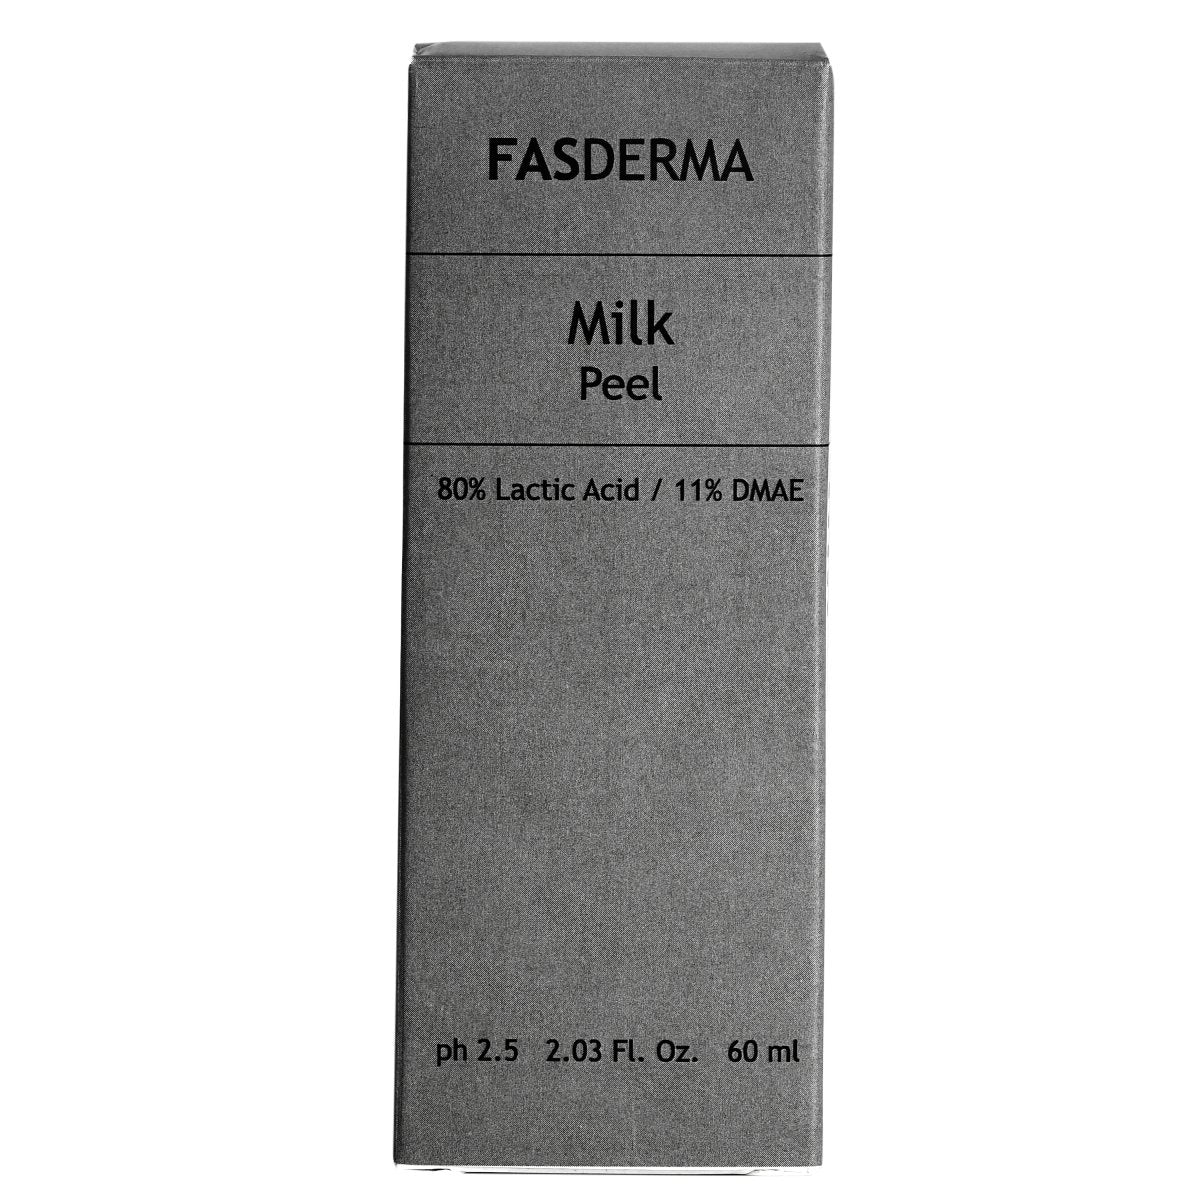 Milk Peel, 60 ML - Fasderma India